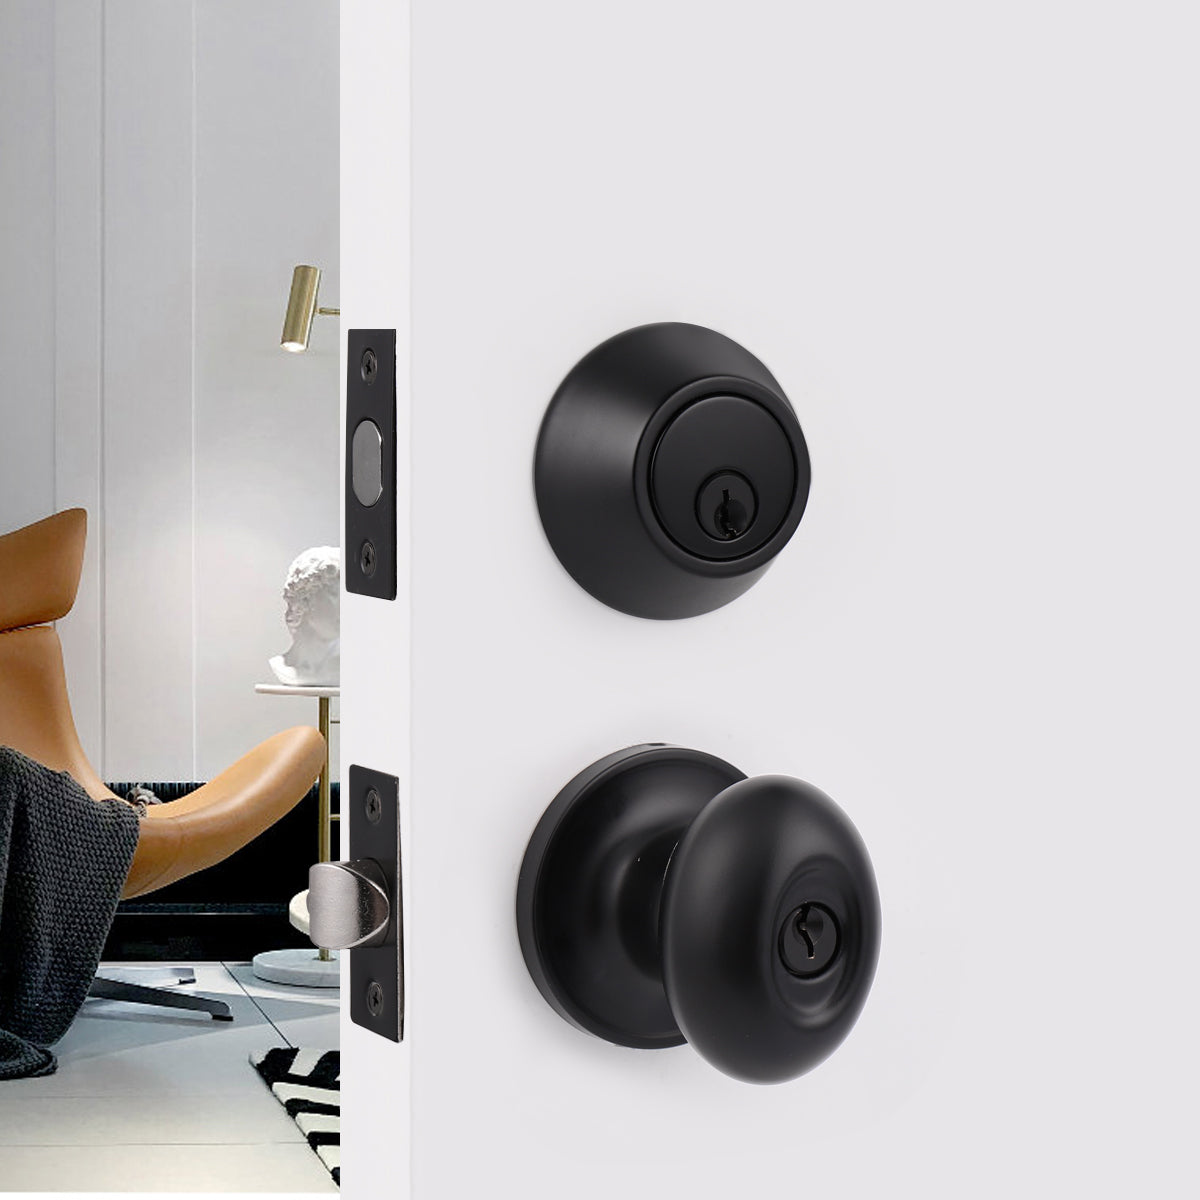 Keyed Alike Oval Egg Door Knobs with Single Cylinder Deadbolt Lock set Black Finish DL692ET01BK - Probrico